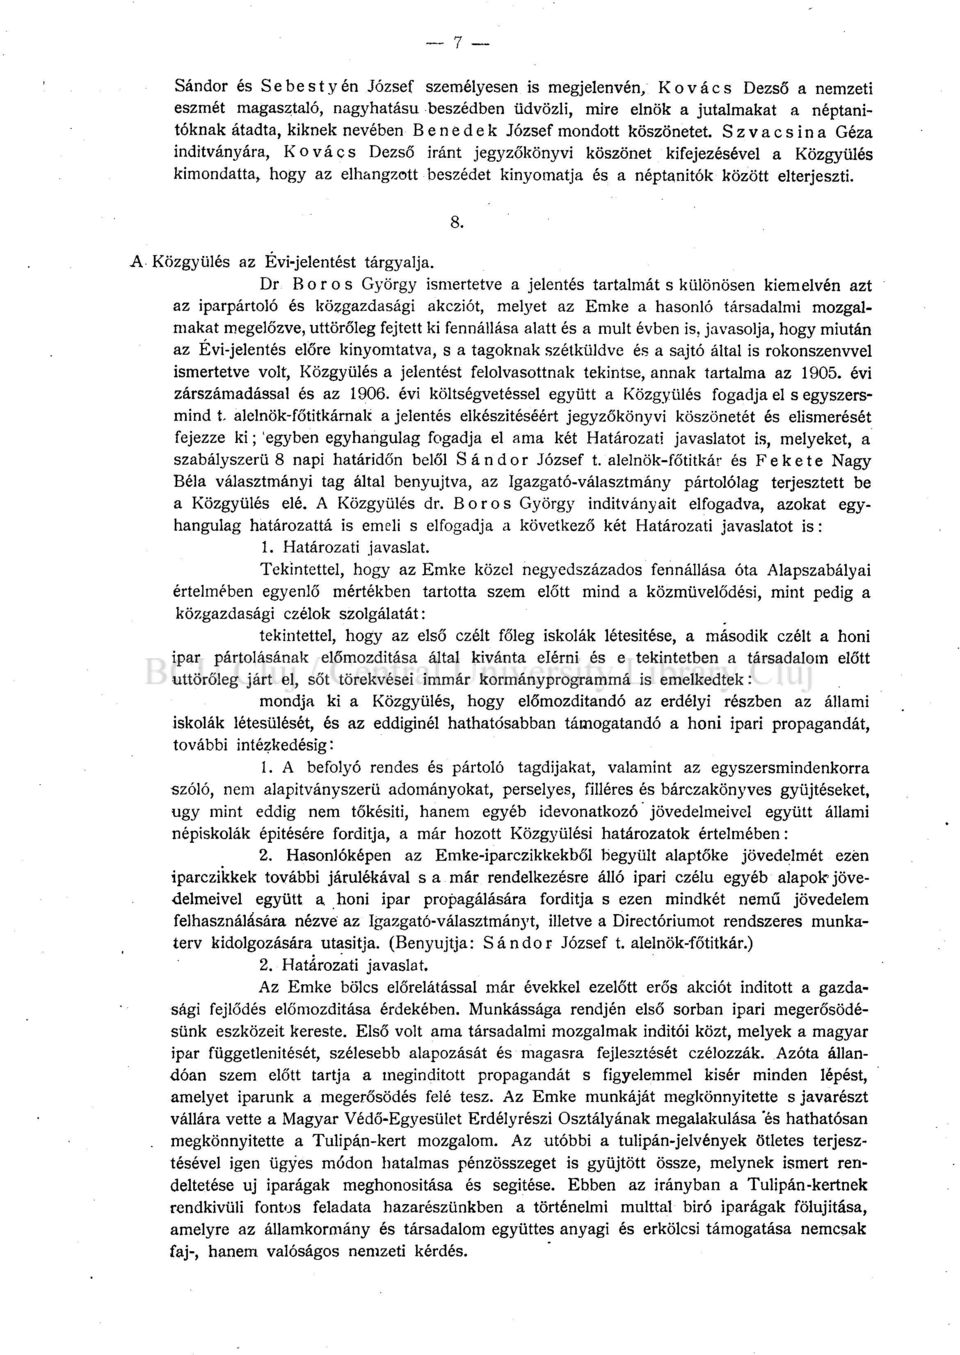 Szvacsina Géza indítványára, Kovács Dezső iránt jegyzőkönyvi köszönet kifejezésével a Közgyűlés kimondatta, hogy az elhangzott beszédet kinyomatja és a néptanítók között elterjeszti. 8.